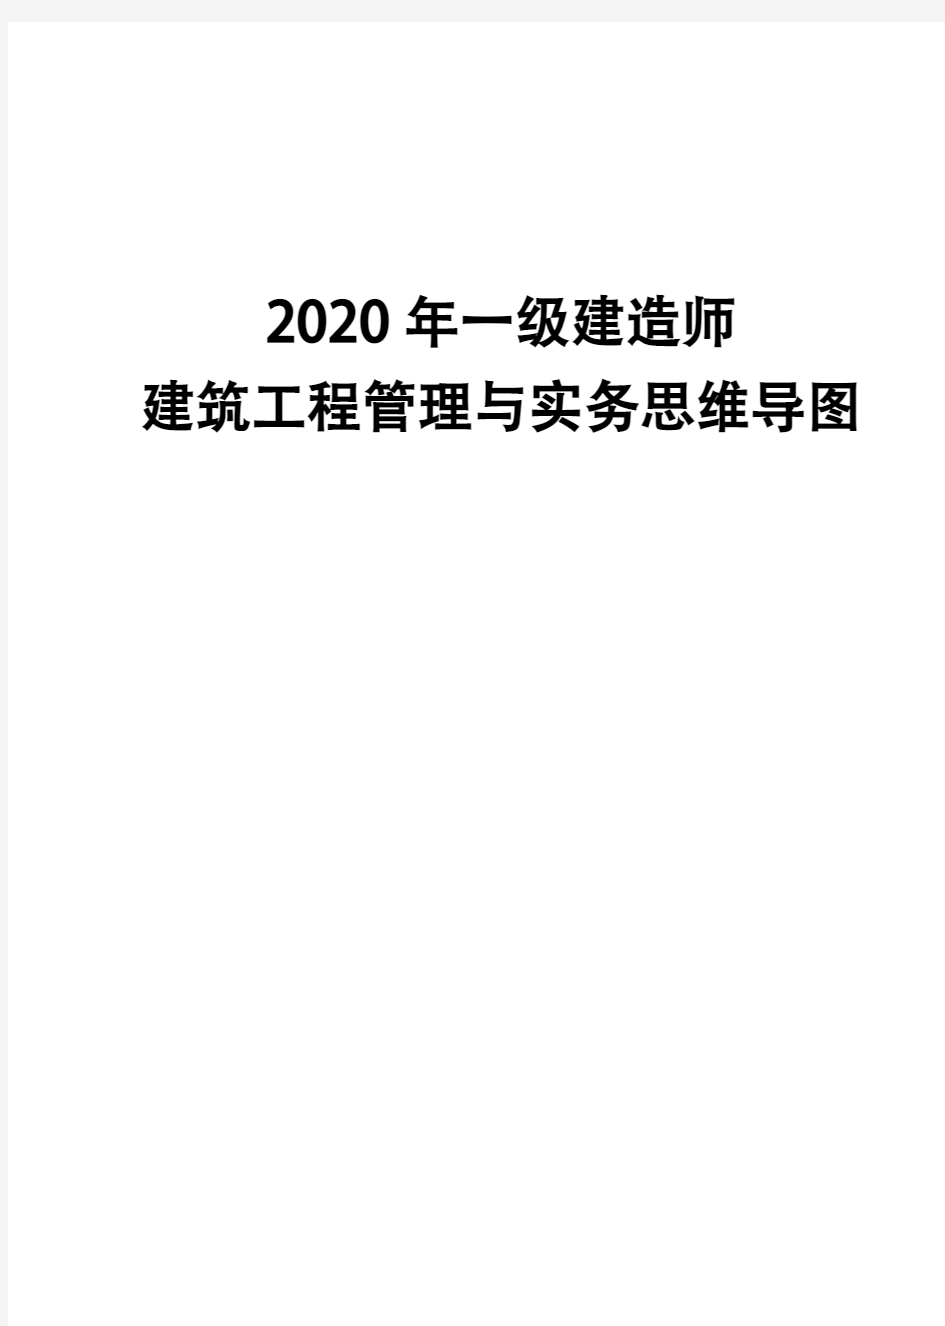 2020年一级建造师《建筑工程管理与实务》思维导图(二)